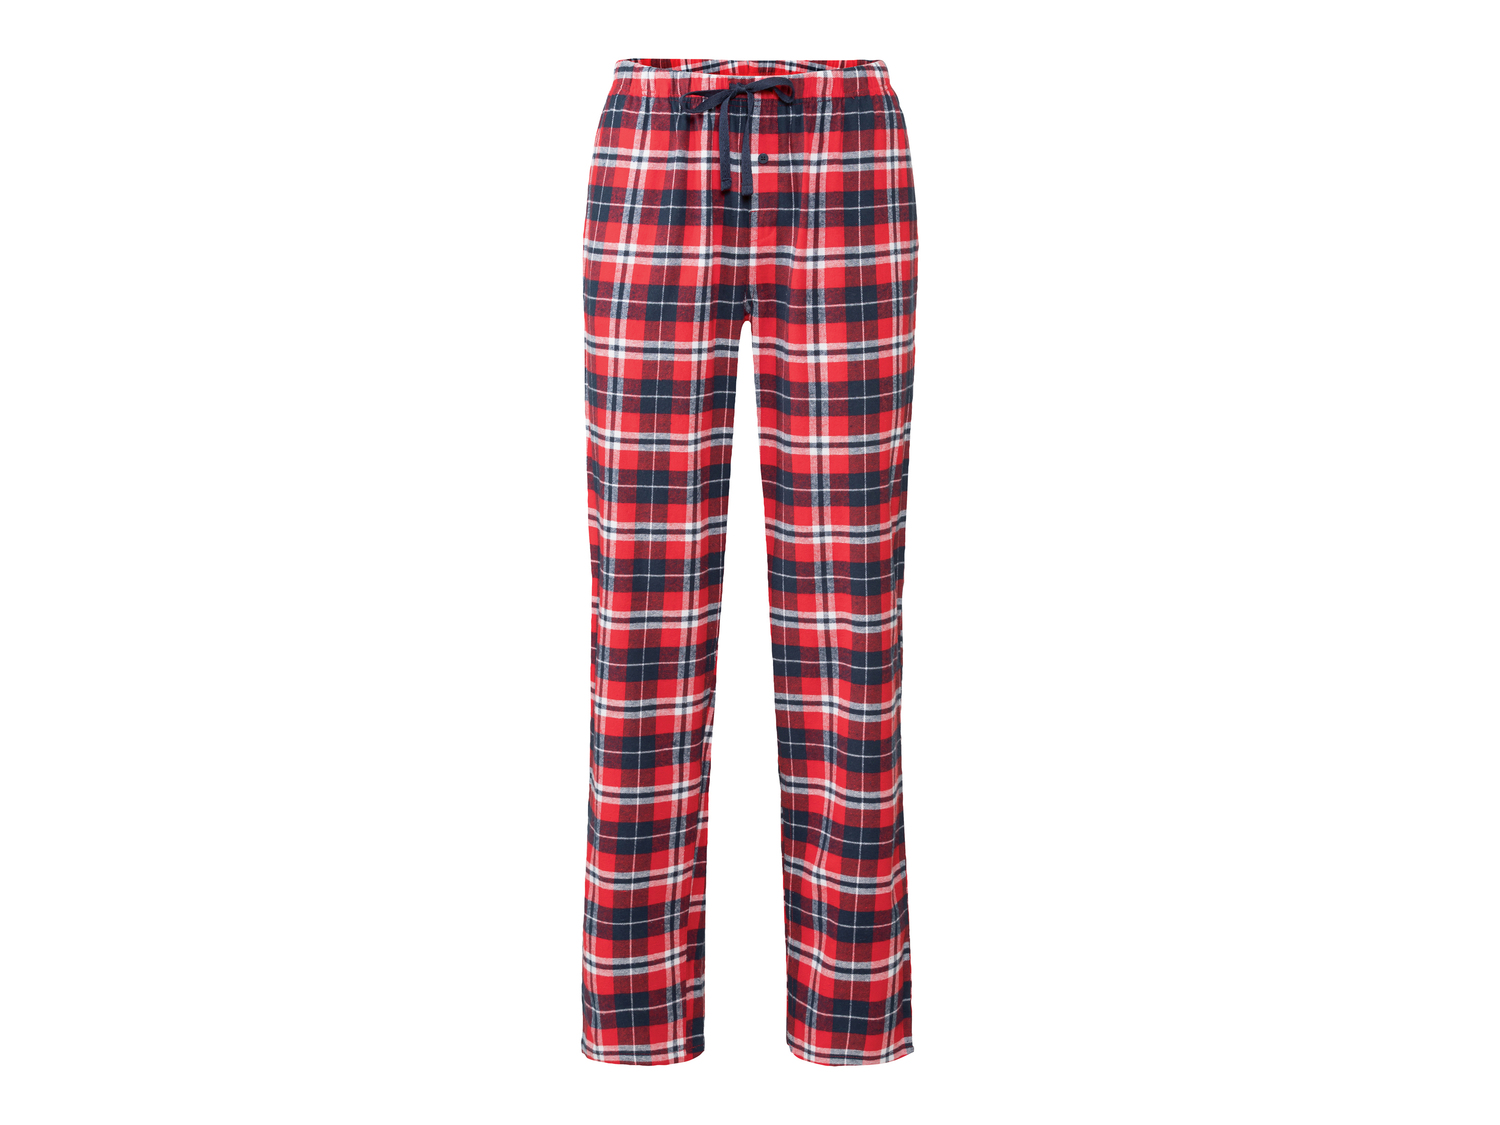 Pantaloni pigiama da donna Esmara, prezzo 7.99 &#8364; 
Misure: S-L 
- Puro ...